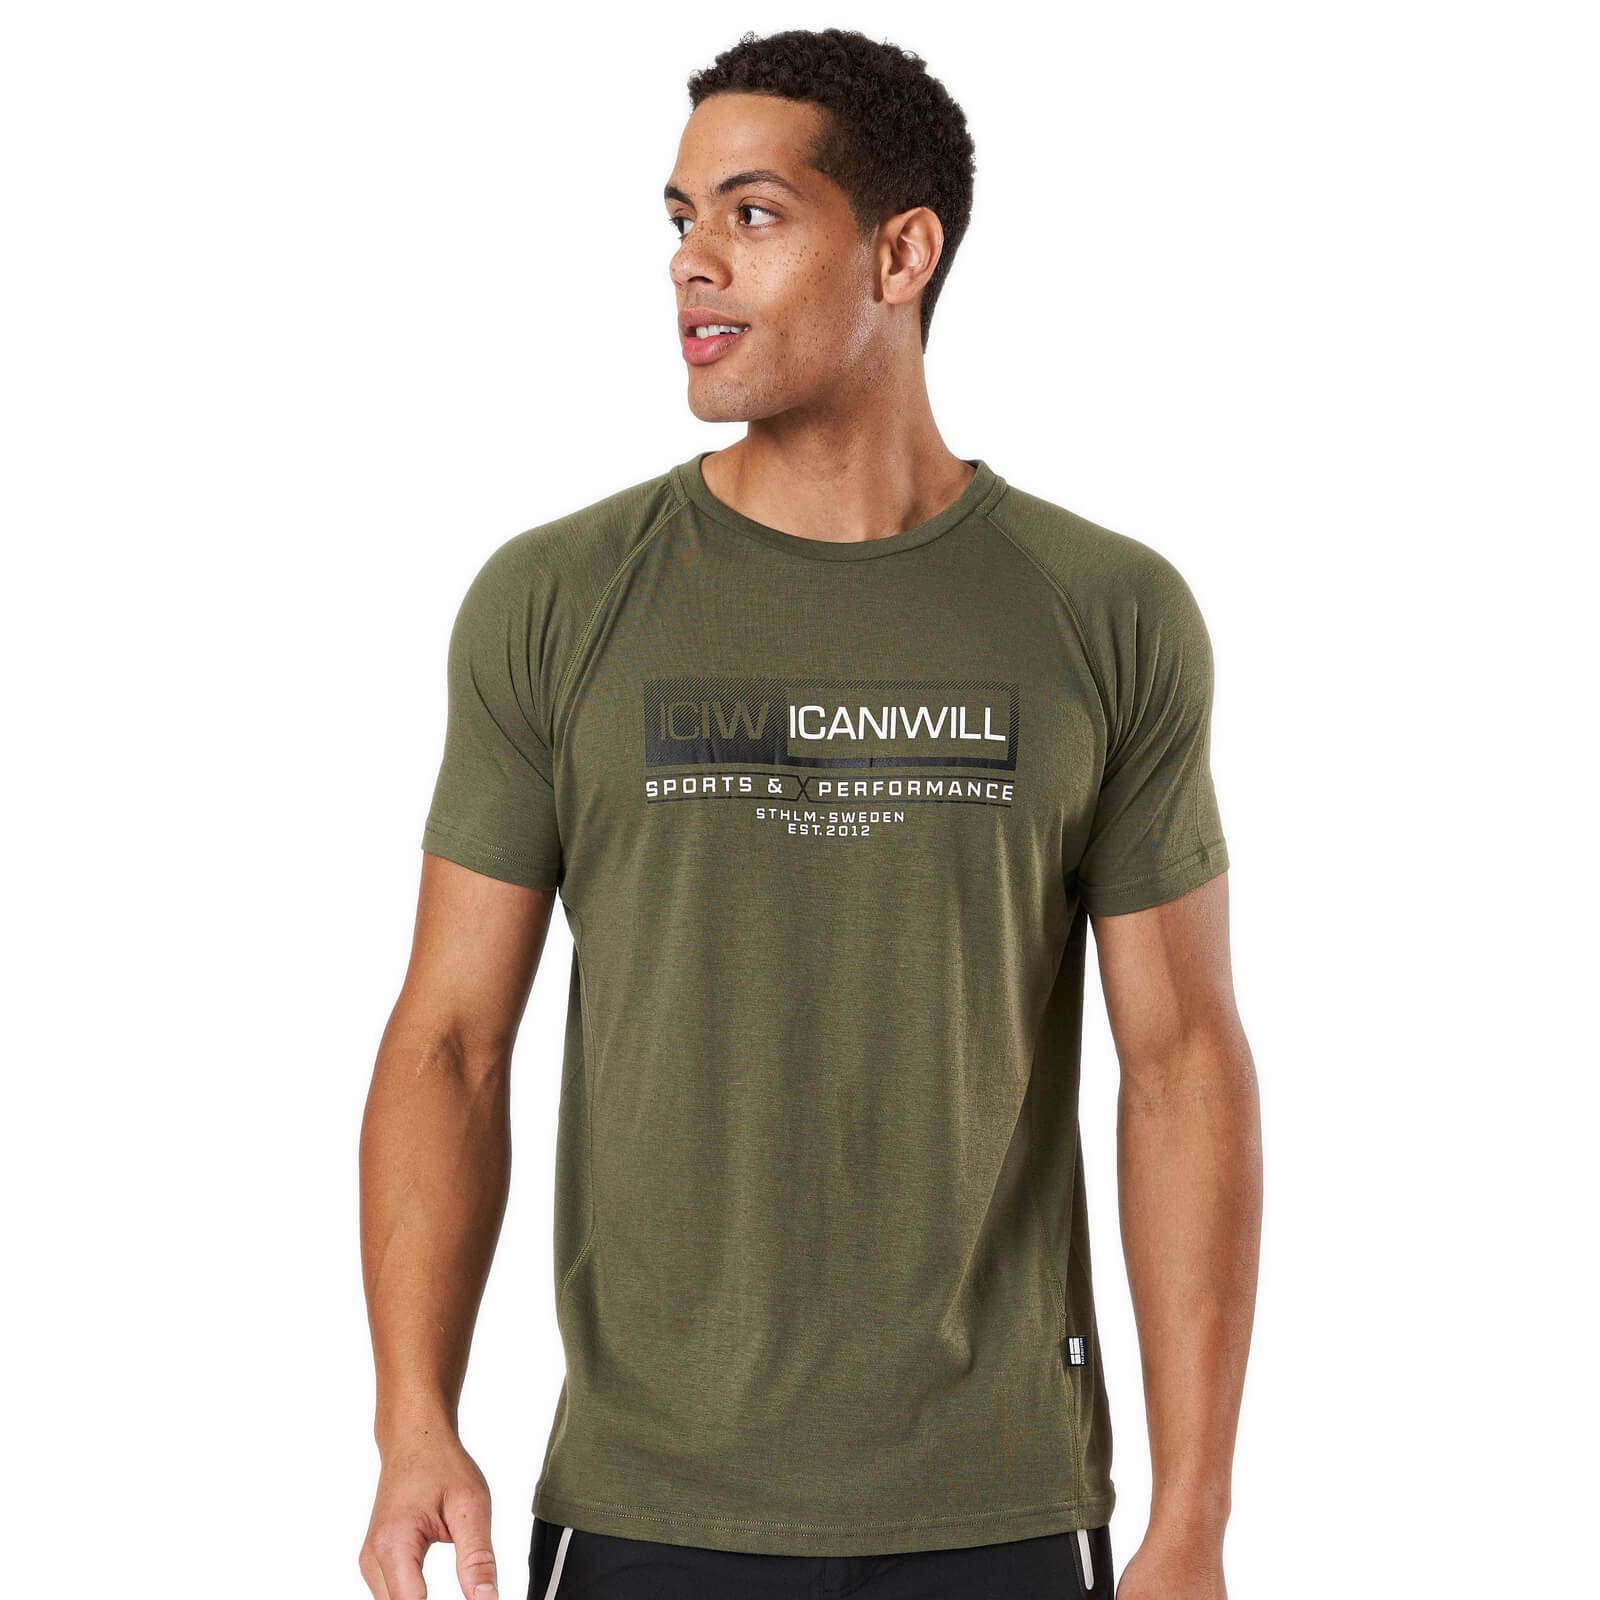 Sjekke Perform Tri-blend Standard fit T-shirt, army, ICANIWILL hos SportGymButik